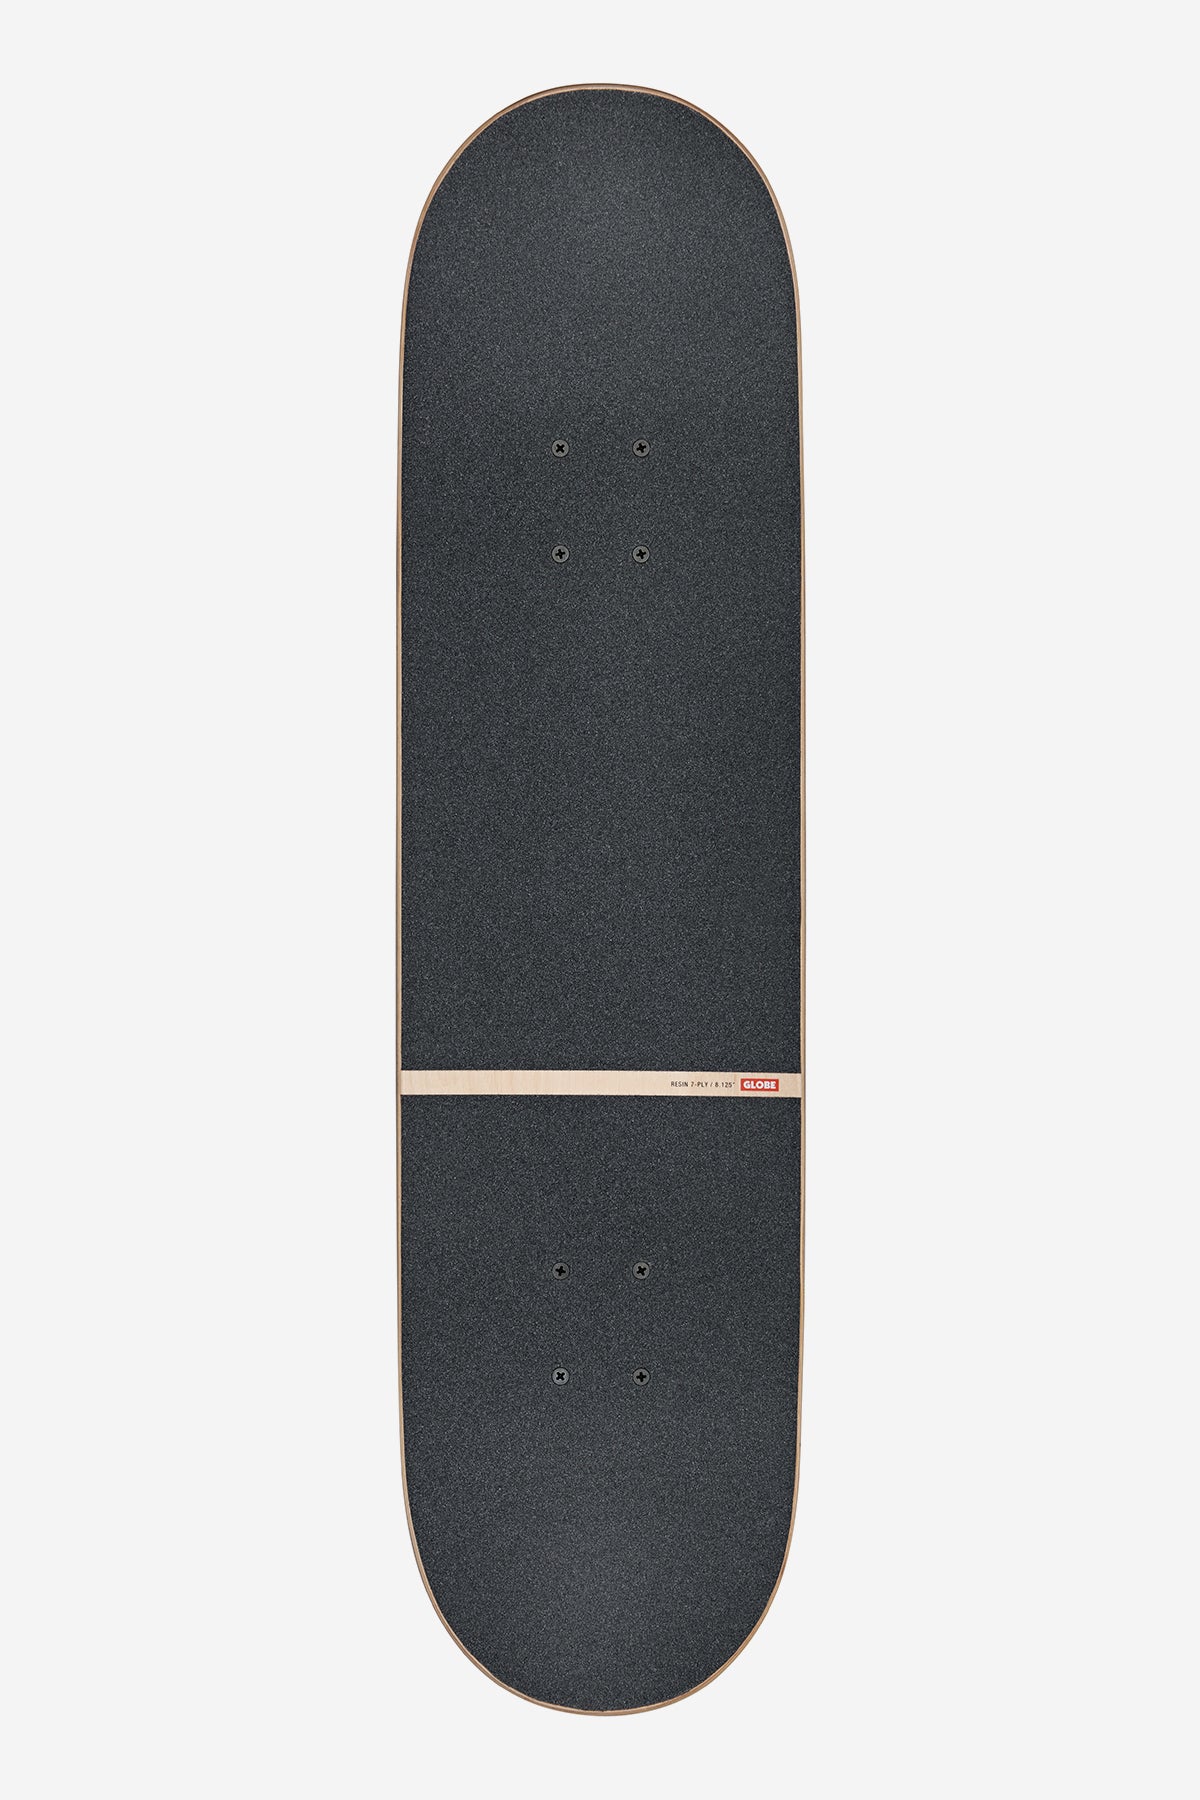 Globe Skateboard completa G1 Slide Stack in polvere